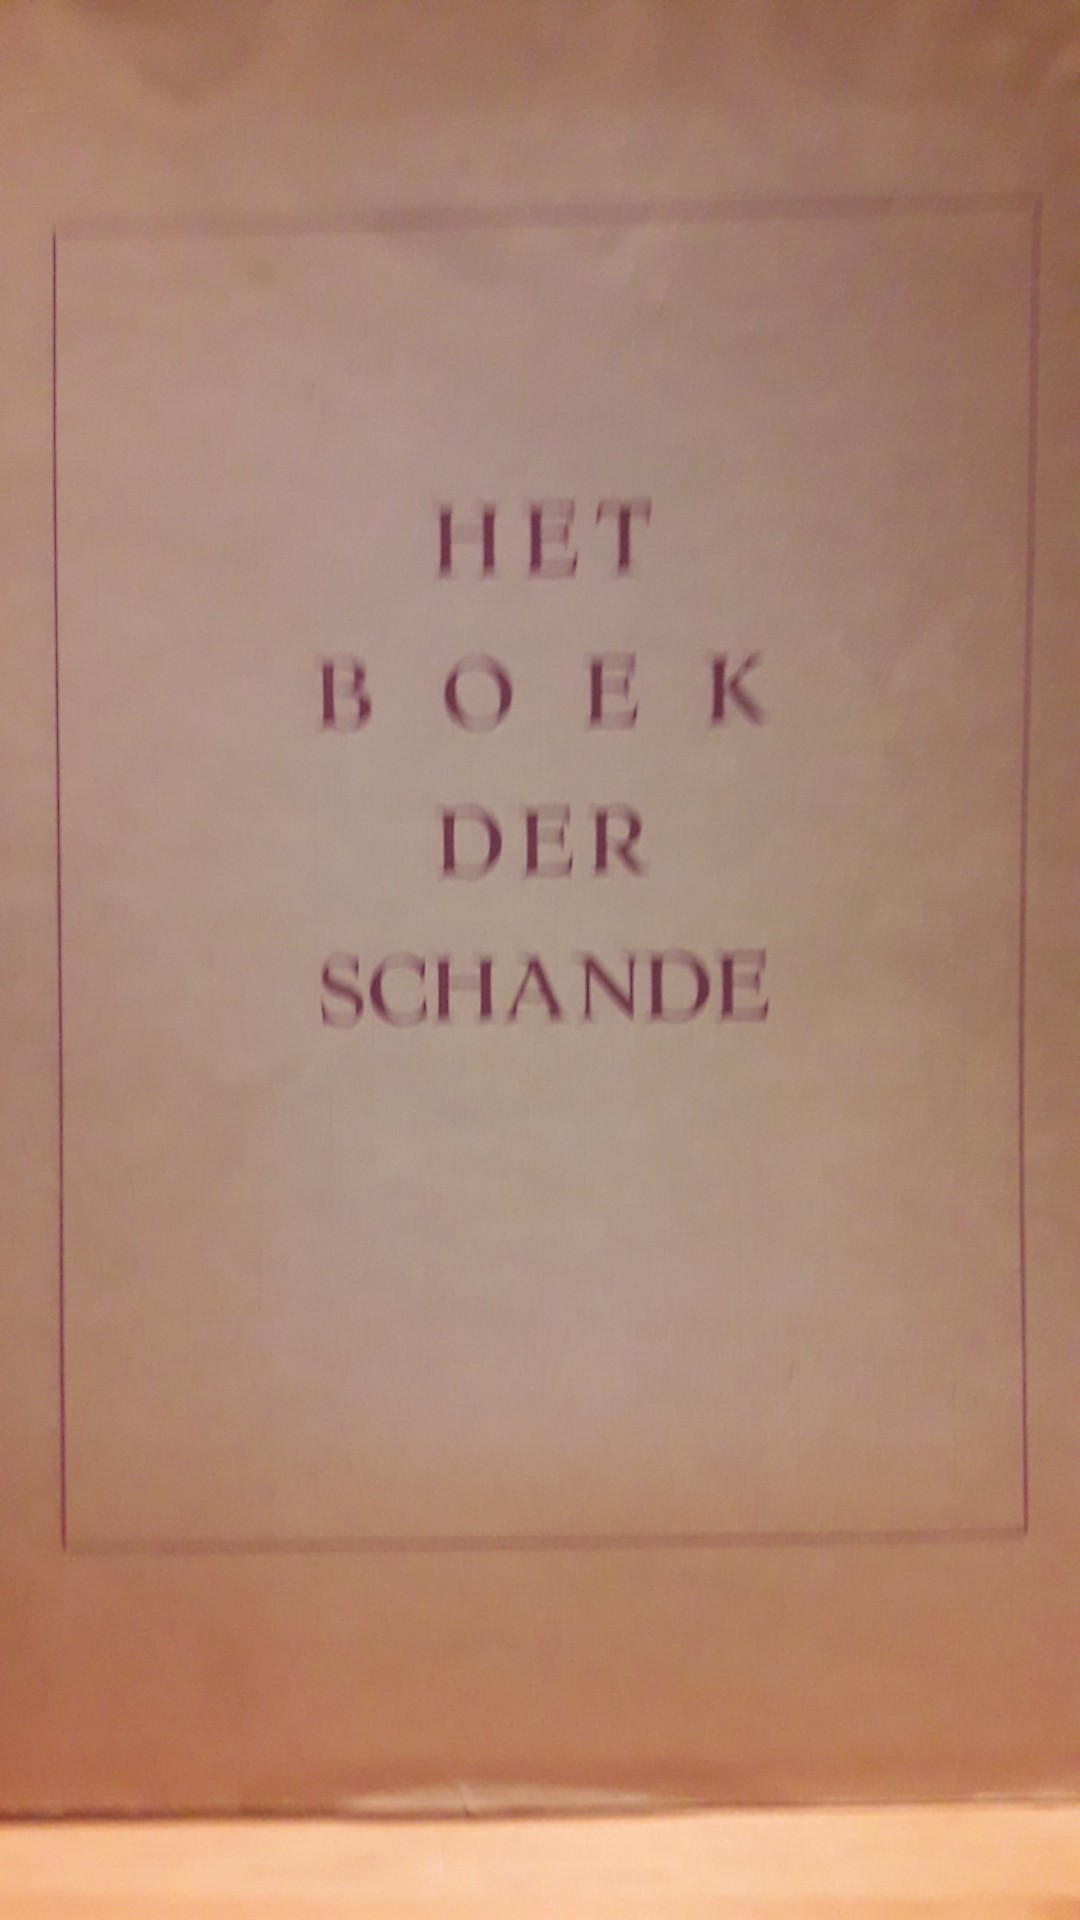 Origineel Boek der Schande uitgave 1950 - 128 blz